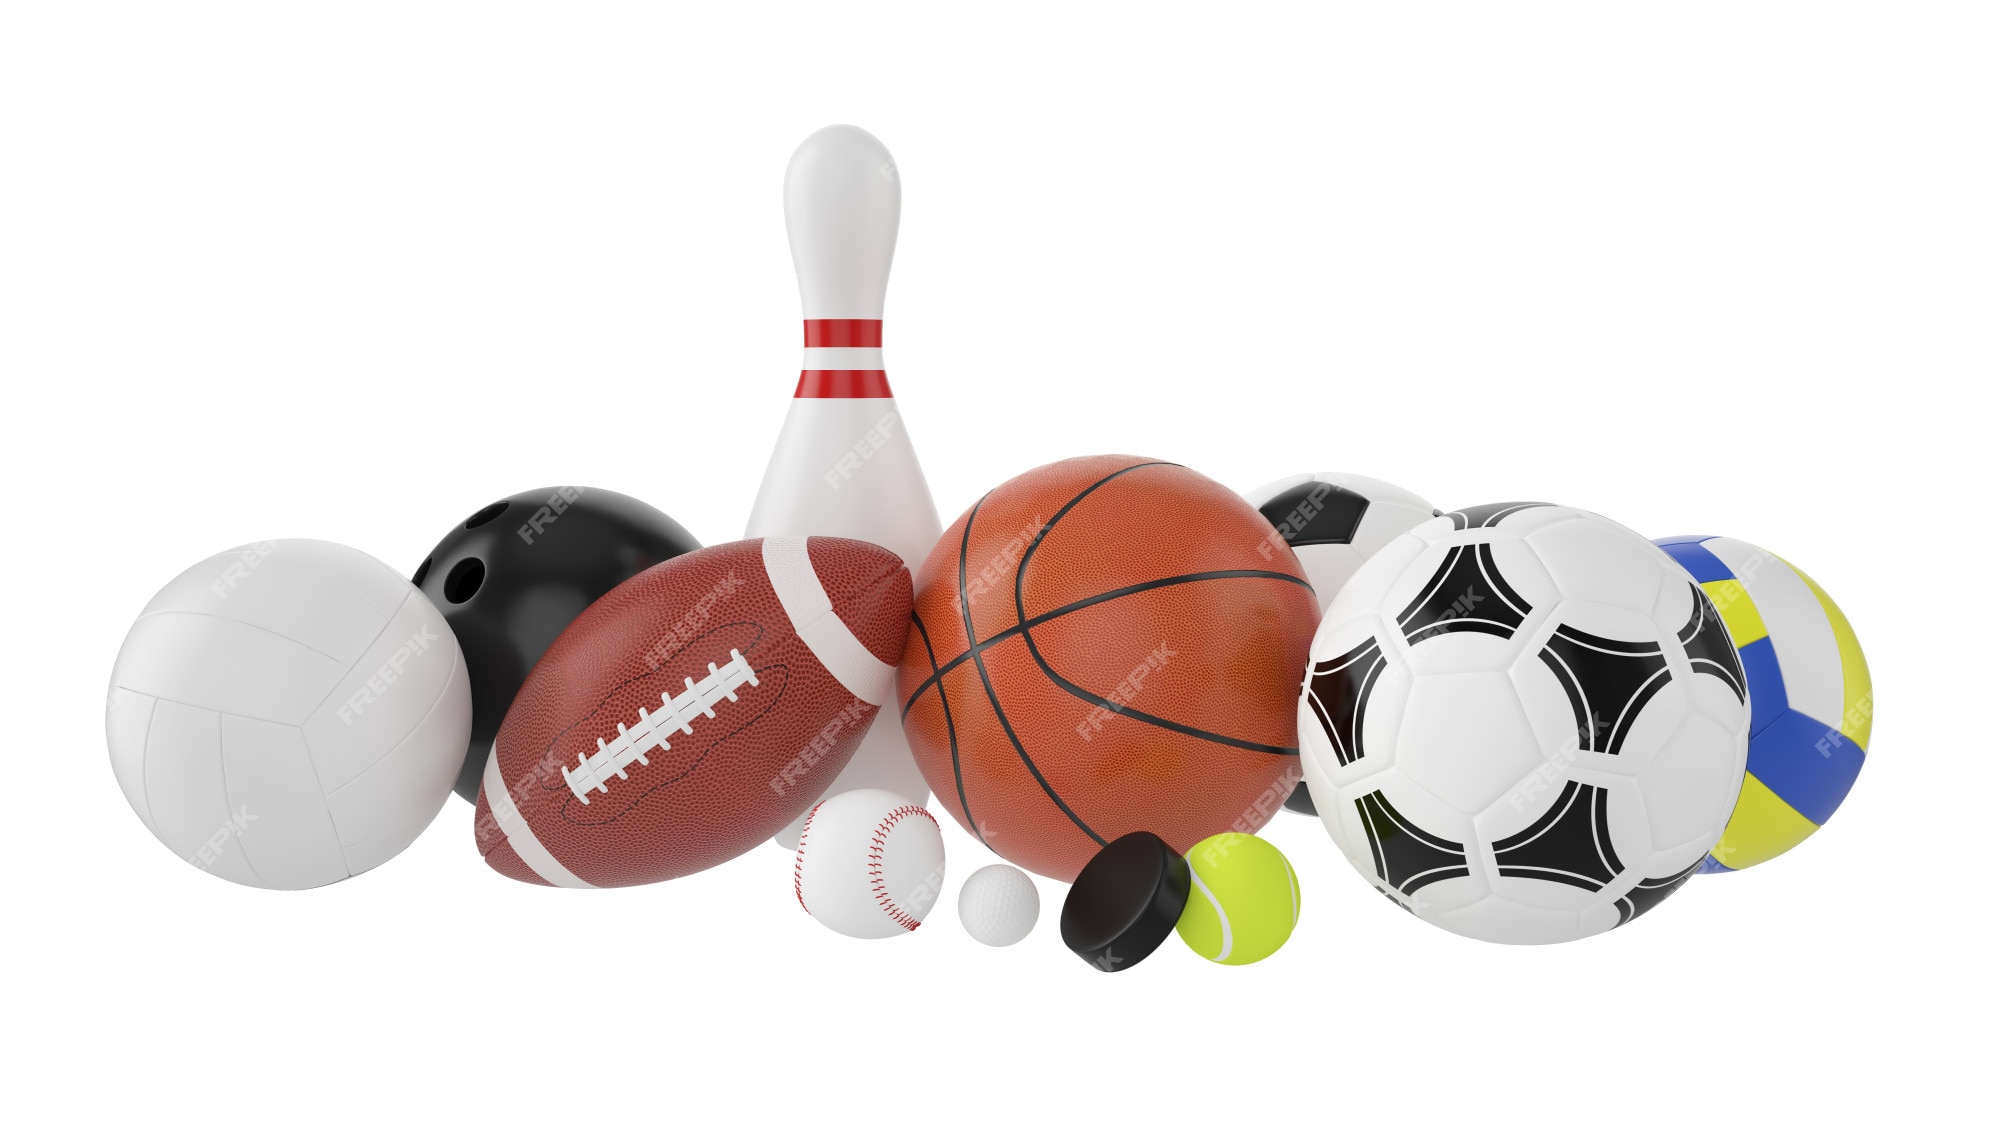 conjunto de bolas coloridas de esporte e itens de jogos 830230